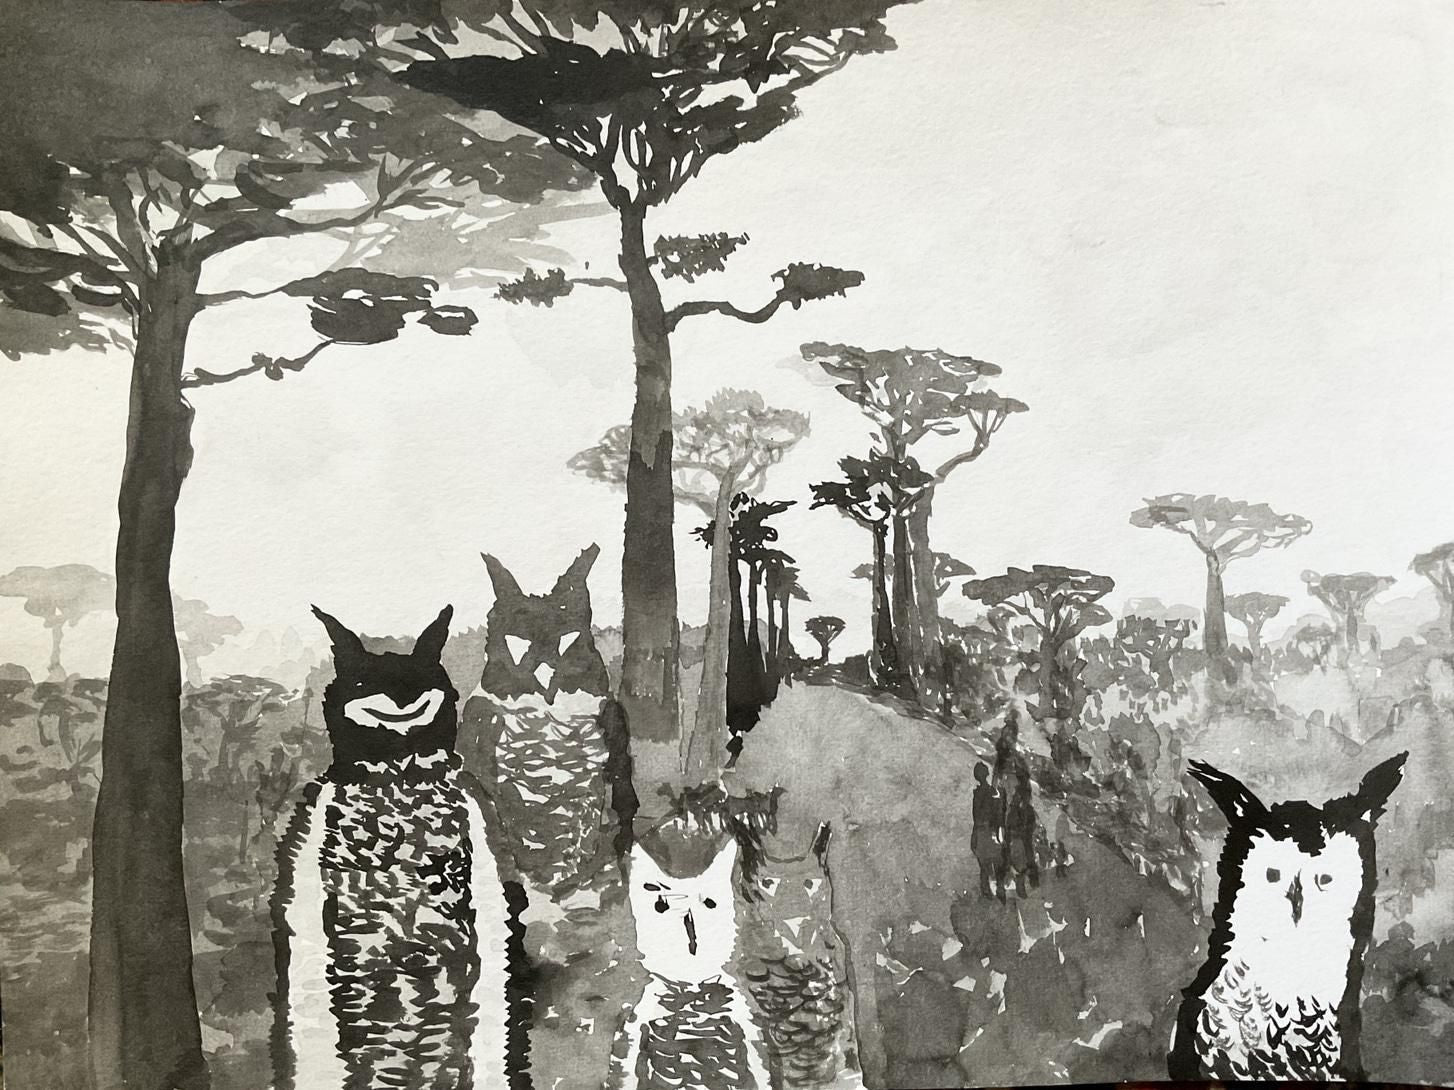 Julia Kissina, "Owls"